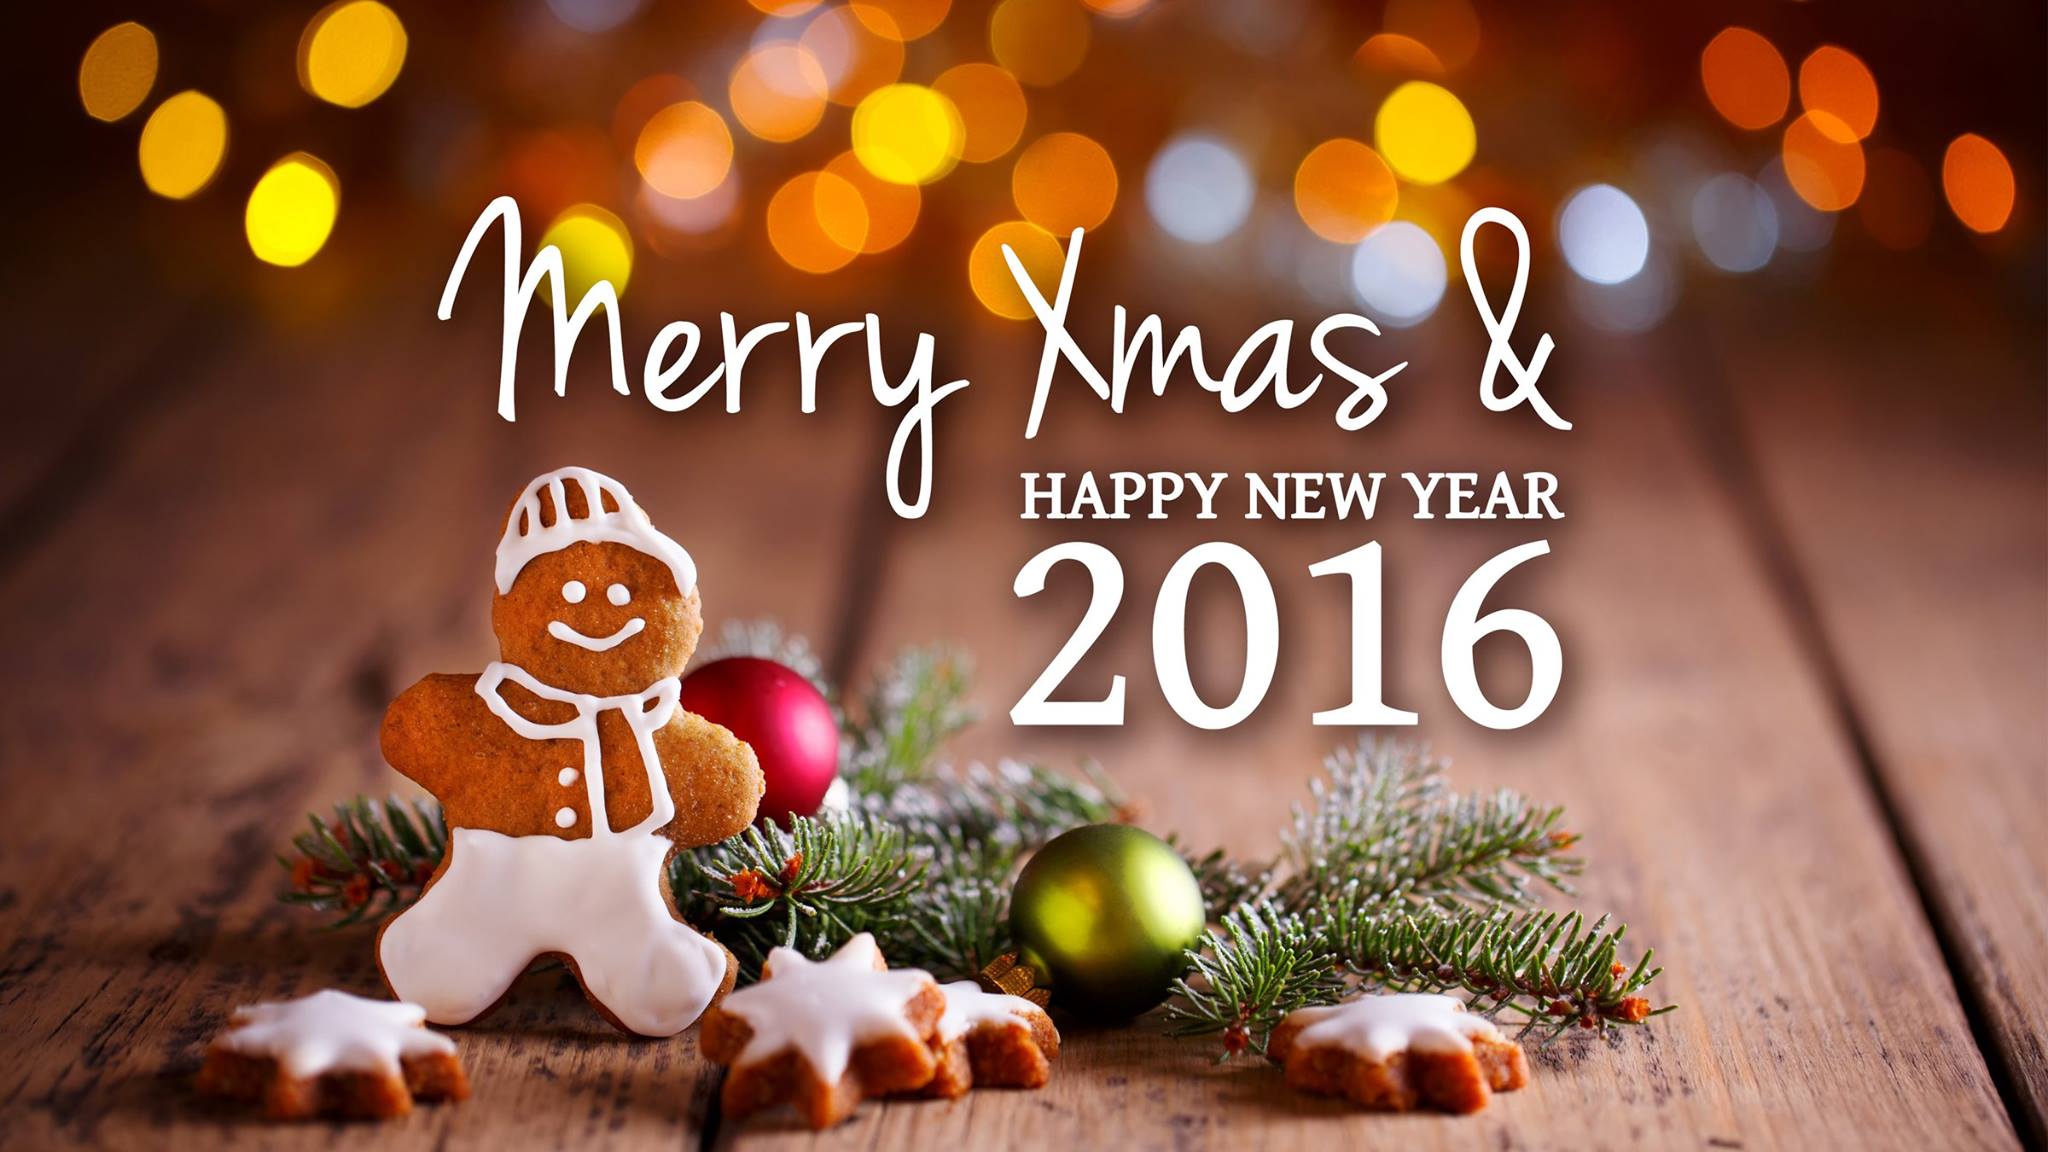 northwest insurance office hours holiday season northwestinsurance.com.au/wp-content/uploads/2016/12/Christmas-2016